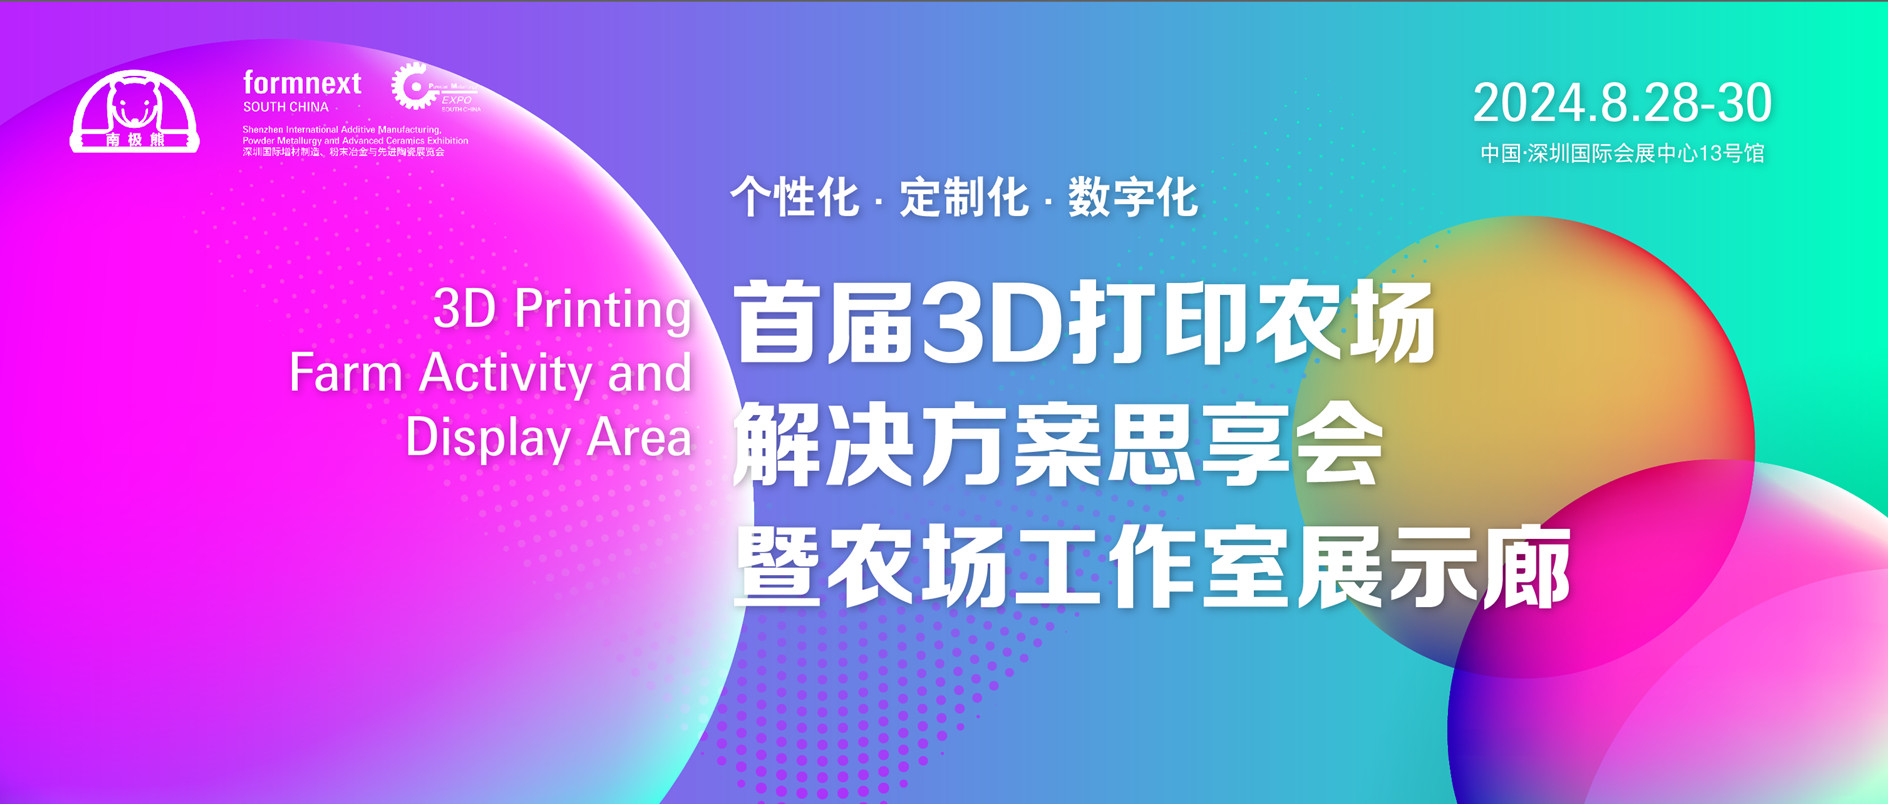 首届 3D 打印农场大会即将在深圳盛大开幕